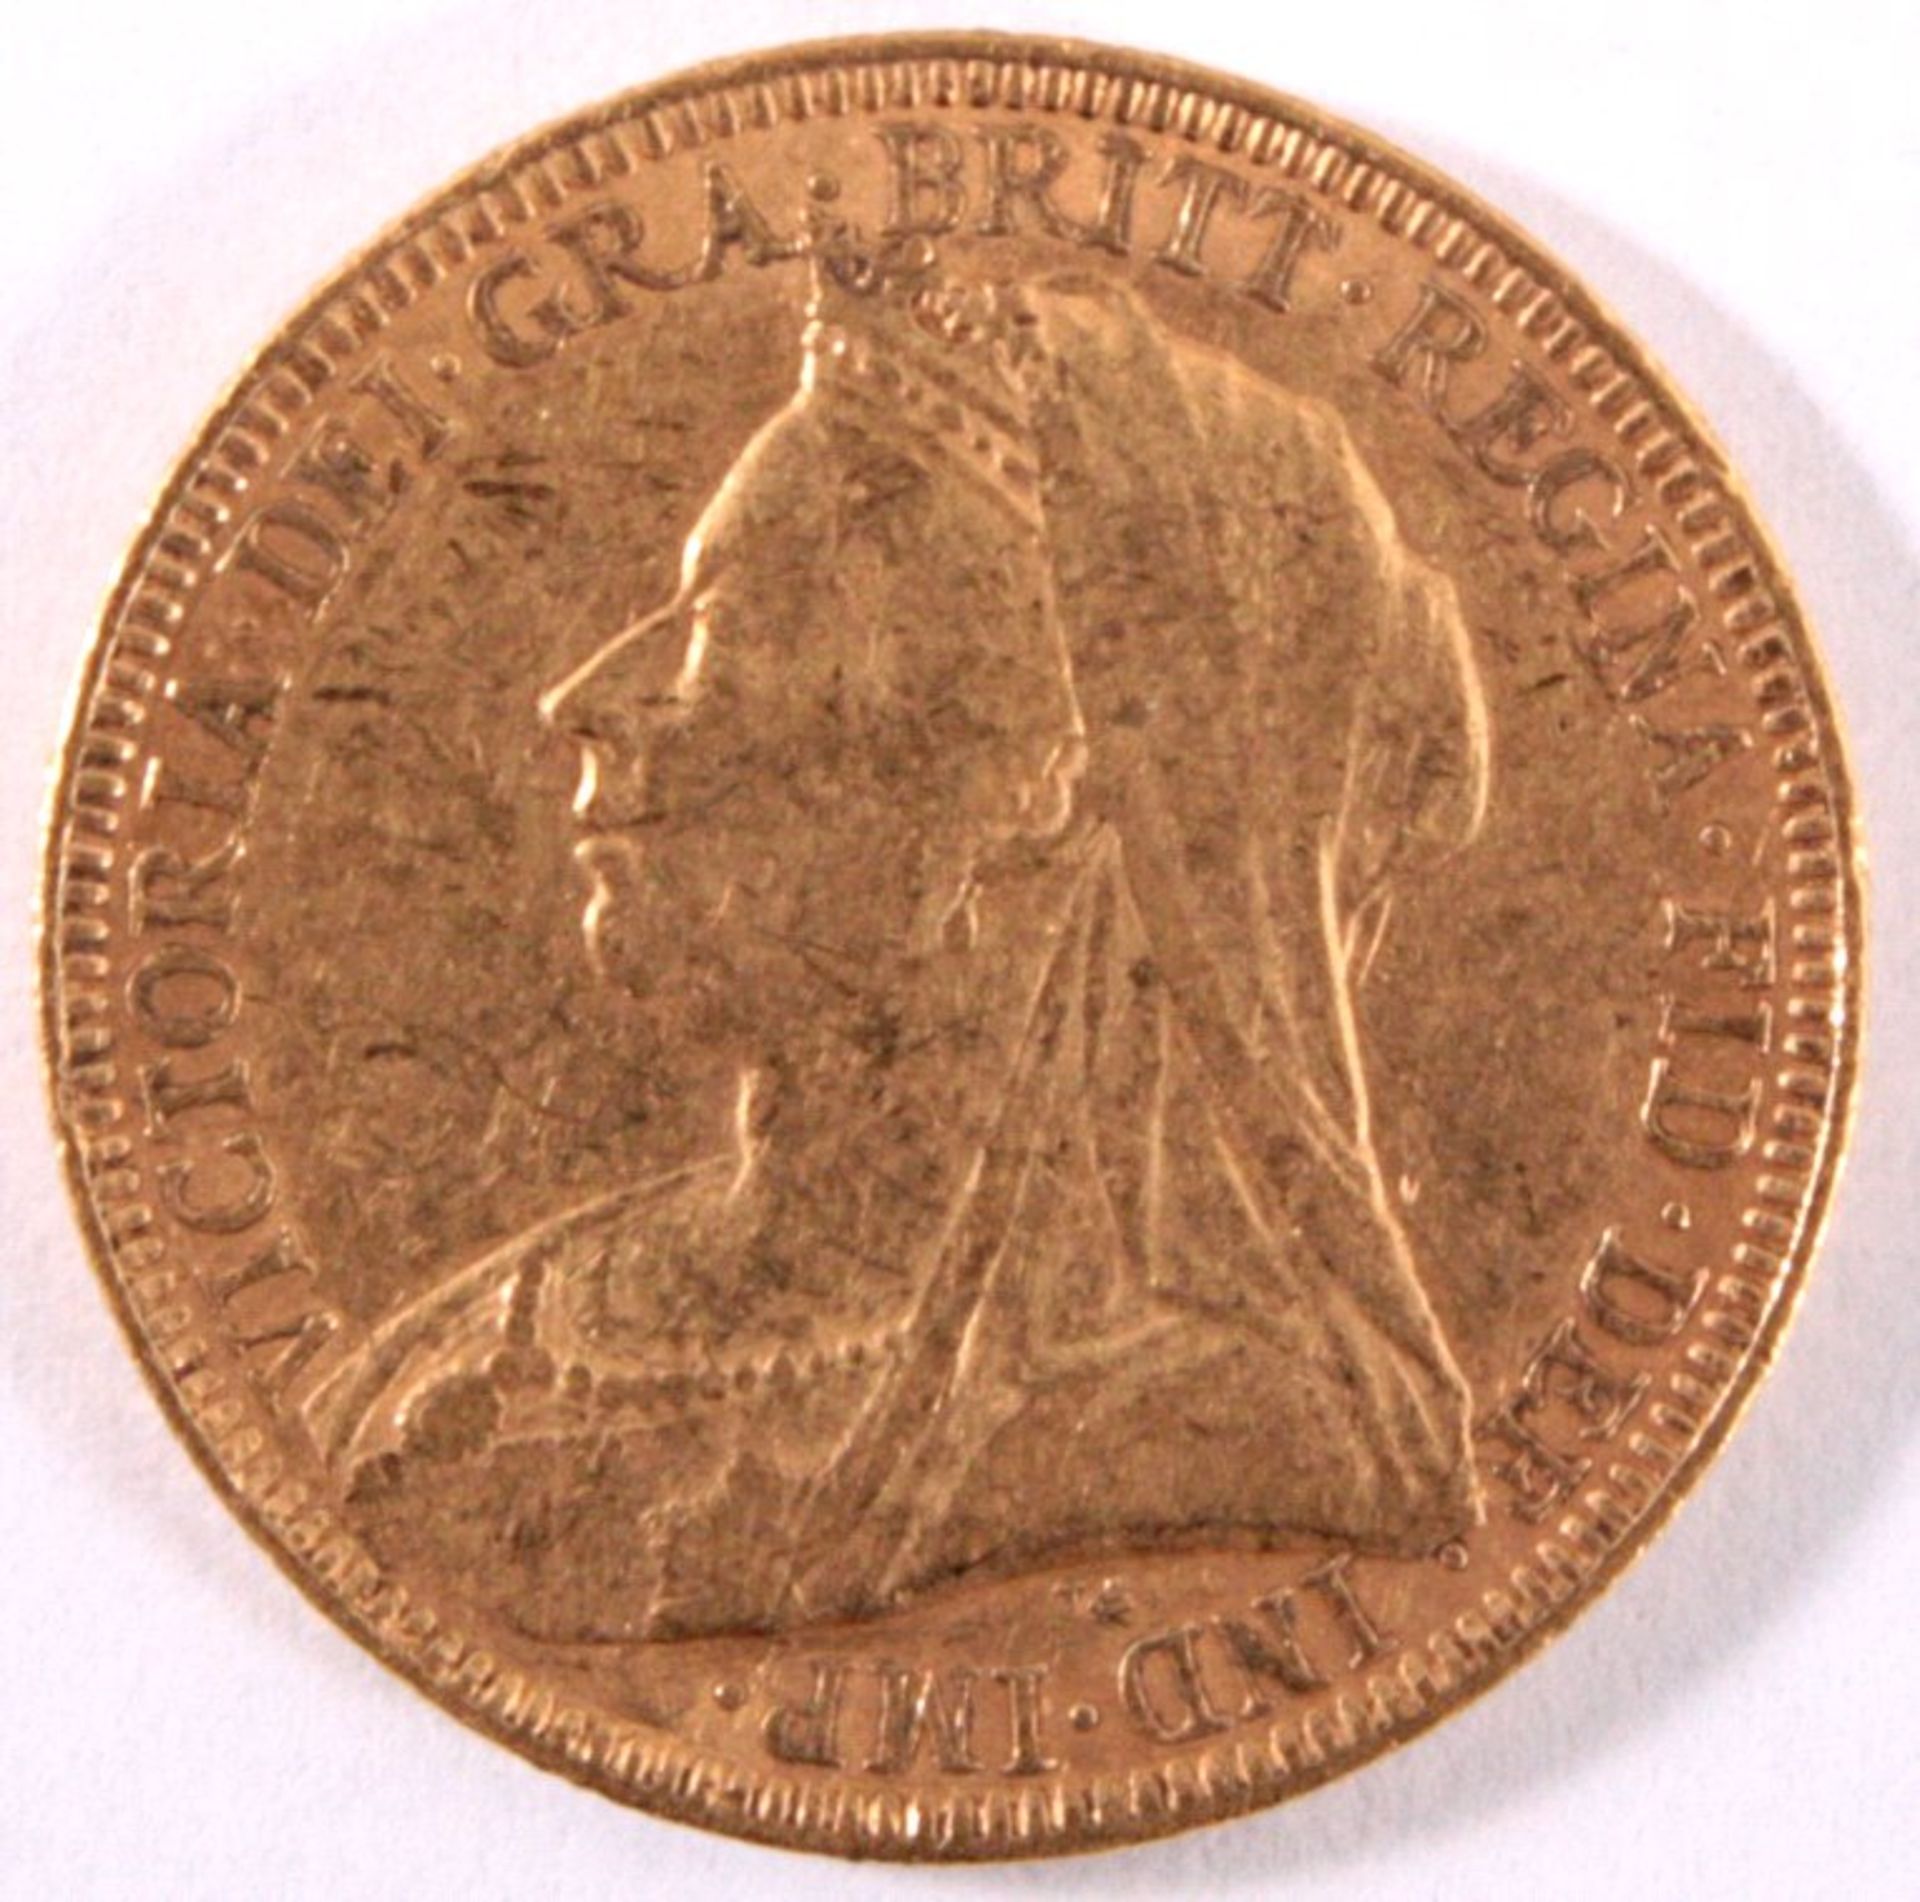 1 Pfund Sovereign Goldmünze Victoria
 Sovereign Goldmünze England 1893
 22 Karat mit 91,66%